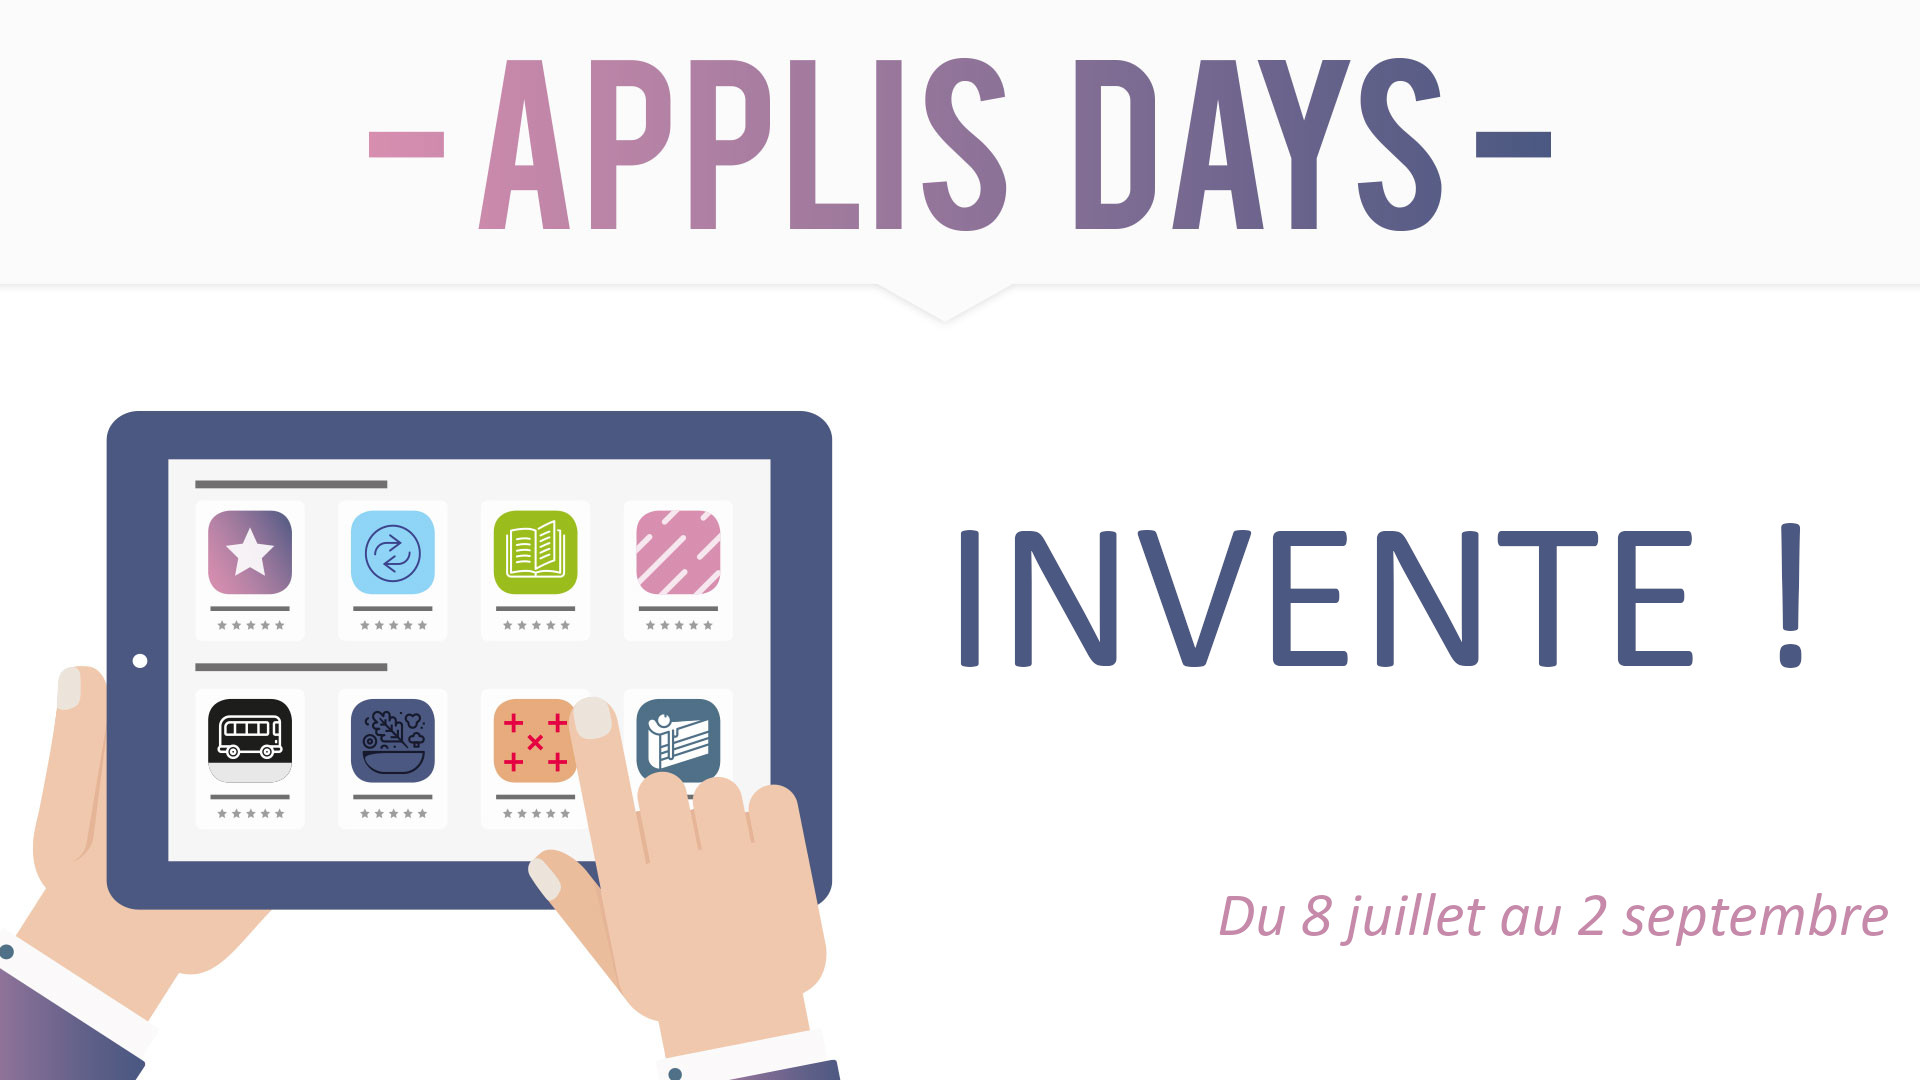 Applis days - invente !